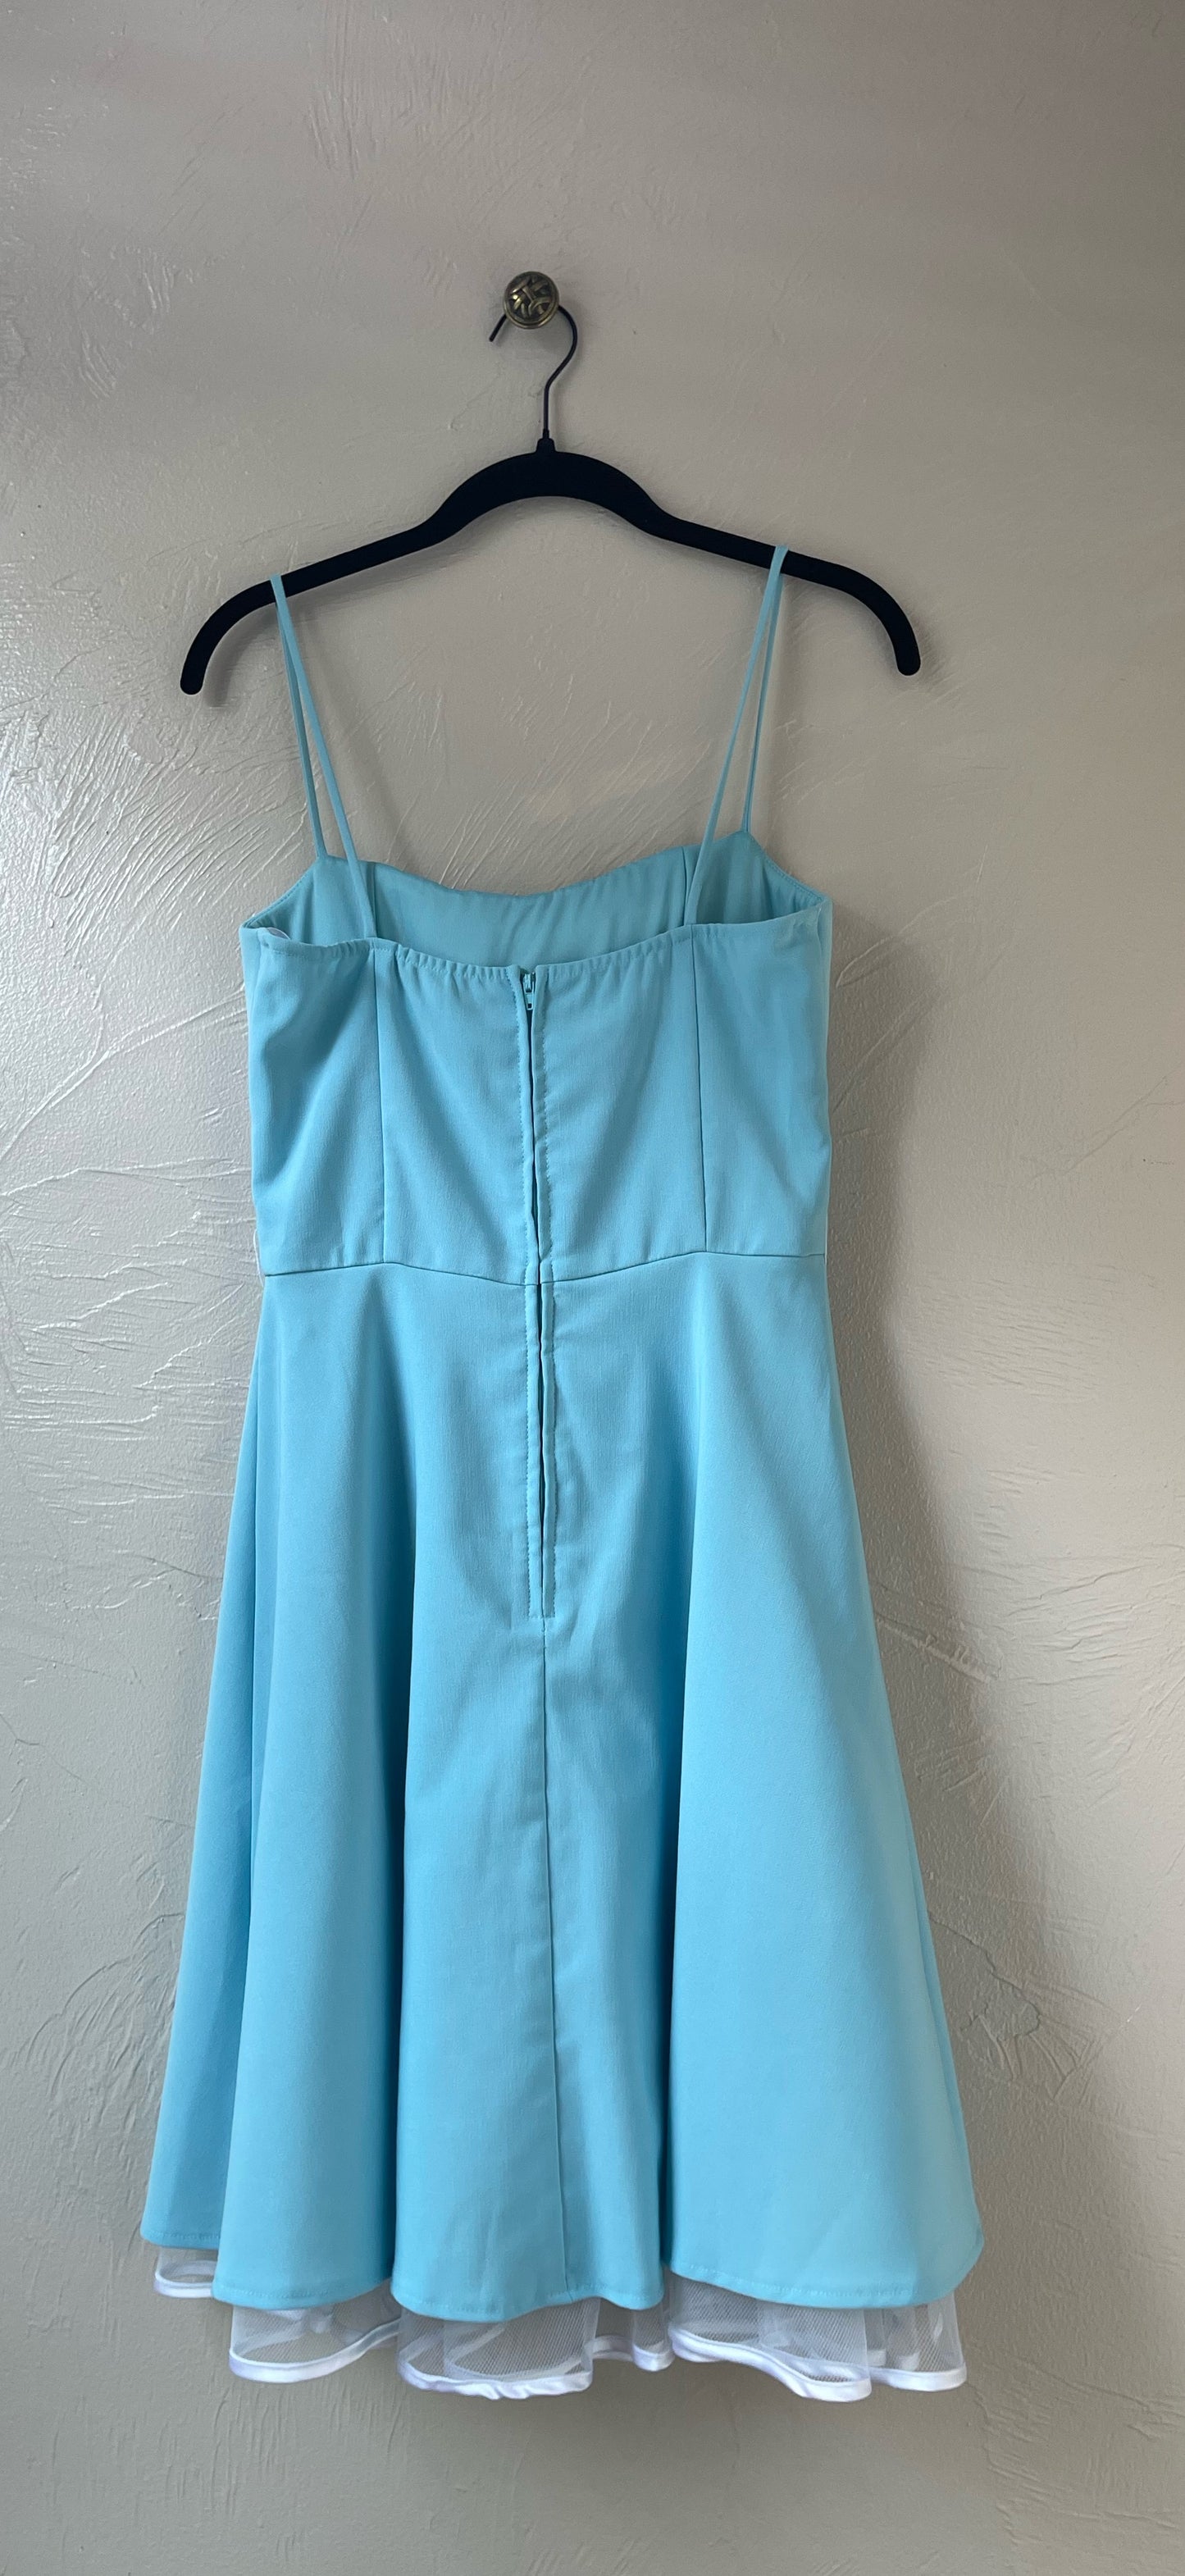 Adorable vestido azul con enagua de tul